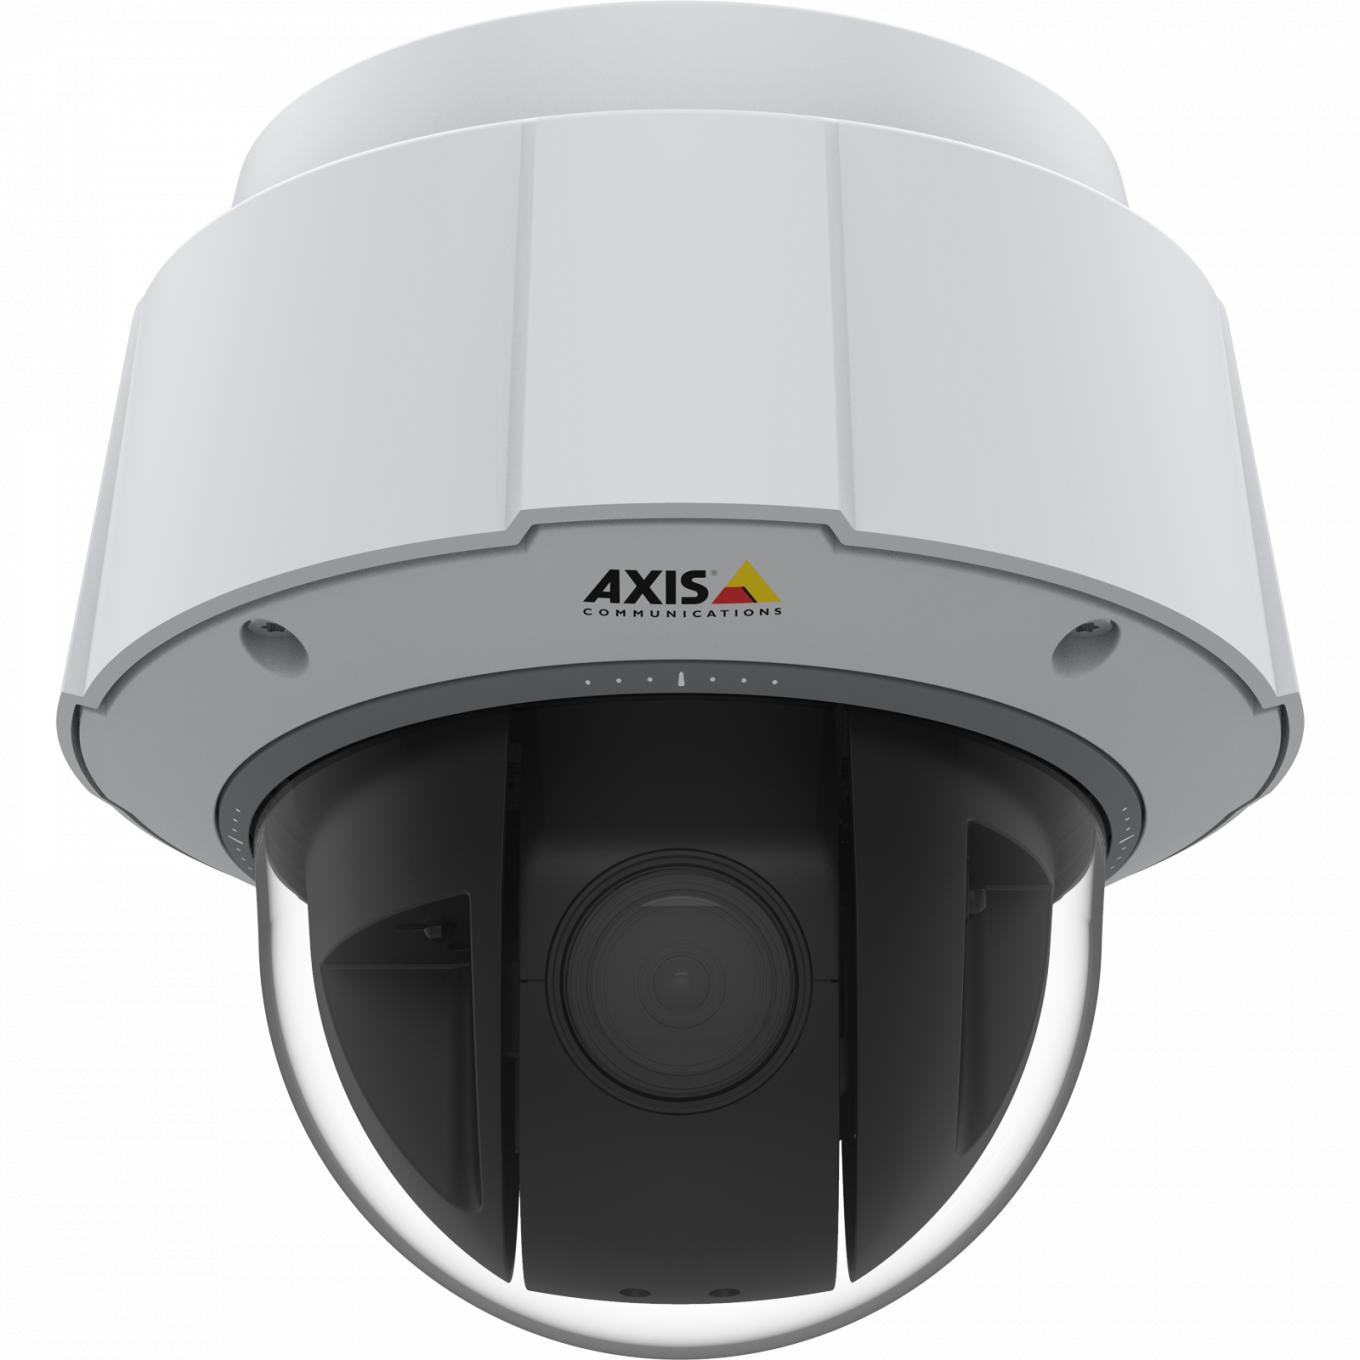 IP Camera AXIS q6075 ma certyfikat TPM, FIPS 140-2 poziom 2 i wbudowane funkcje analizy. Obraz jest przedstawiony z przodu